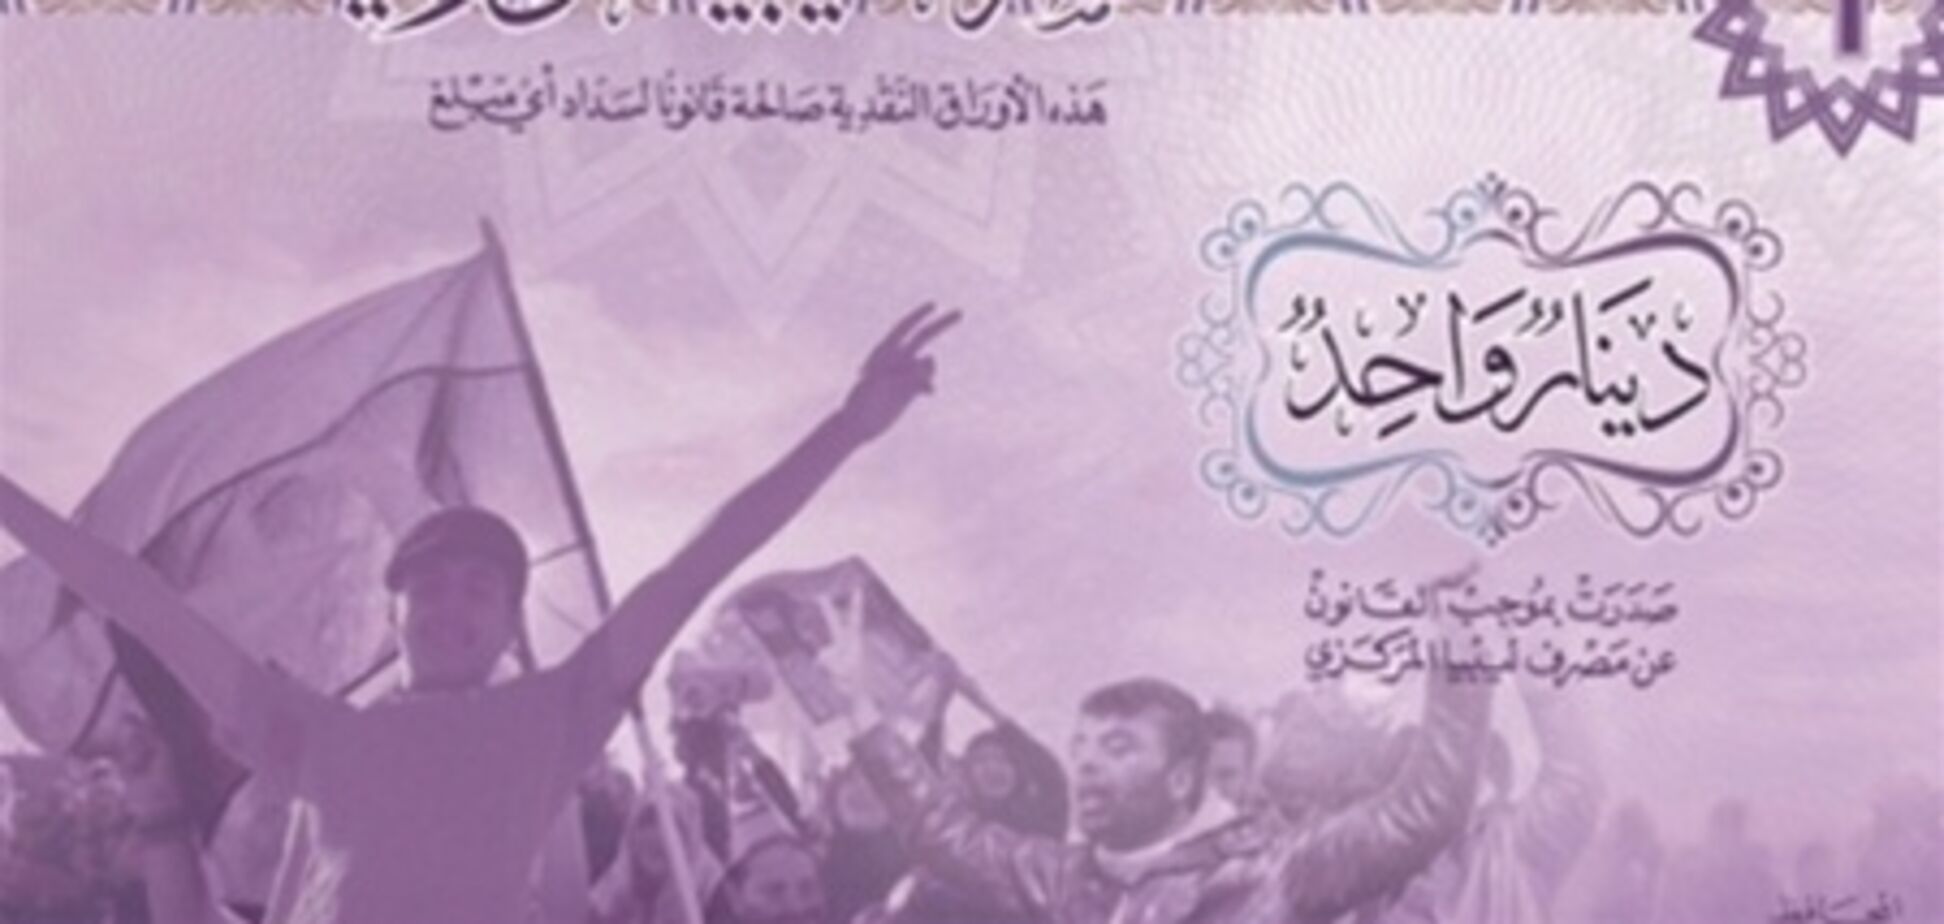 В Ливии ввели в обращение банкноты без портретов Каддафи. Фото